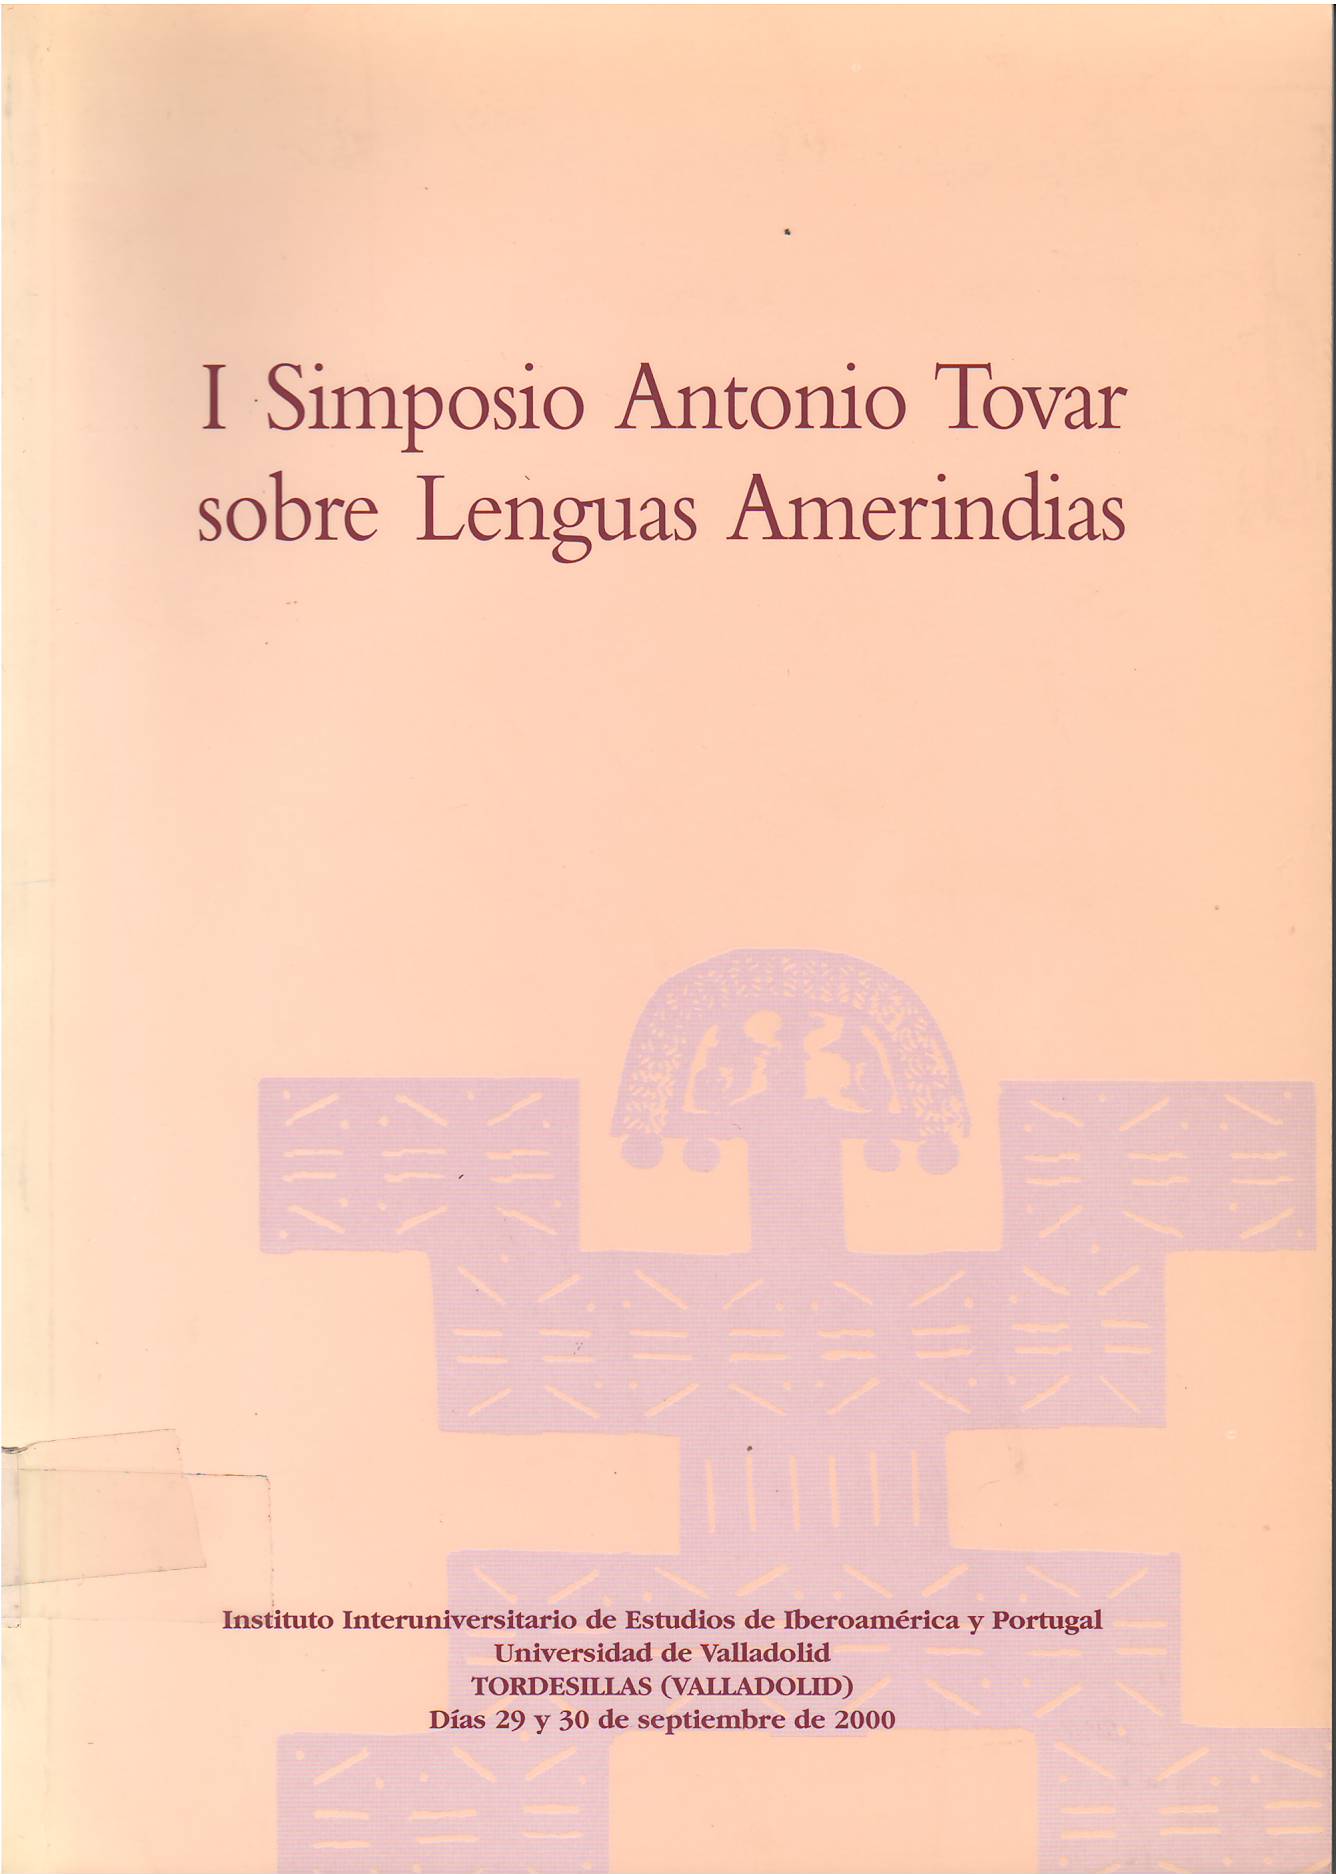 Imagen de portada del libro I Simposio Antonio Tovar sobre Lenguas Amerindias